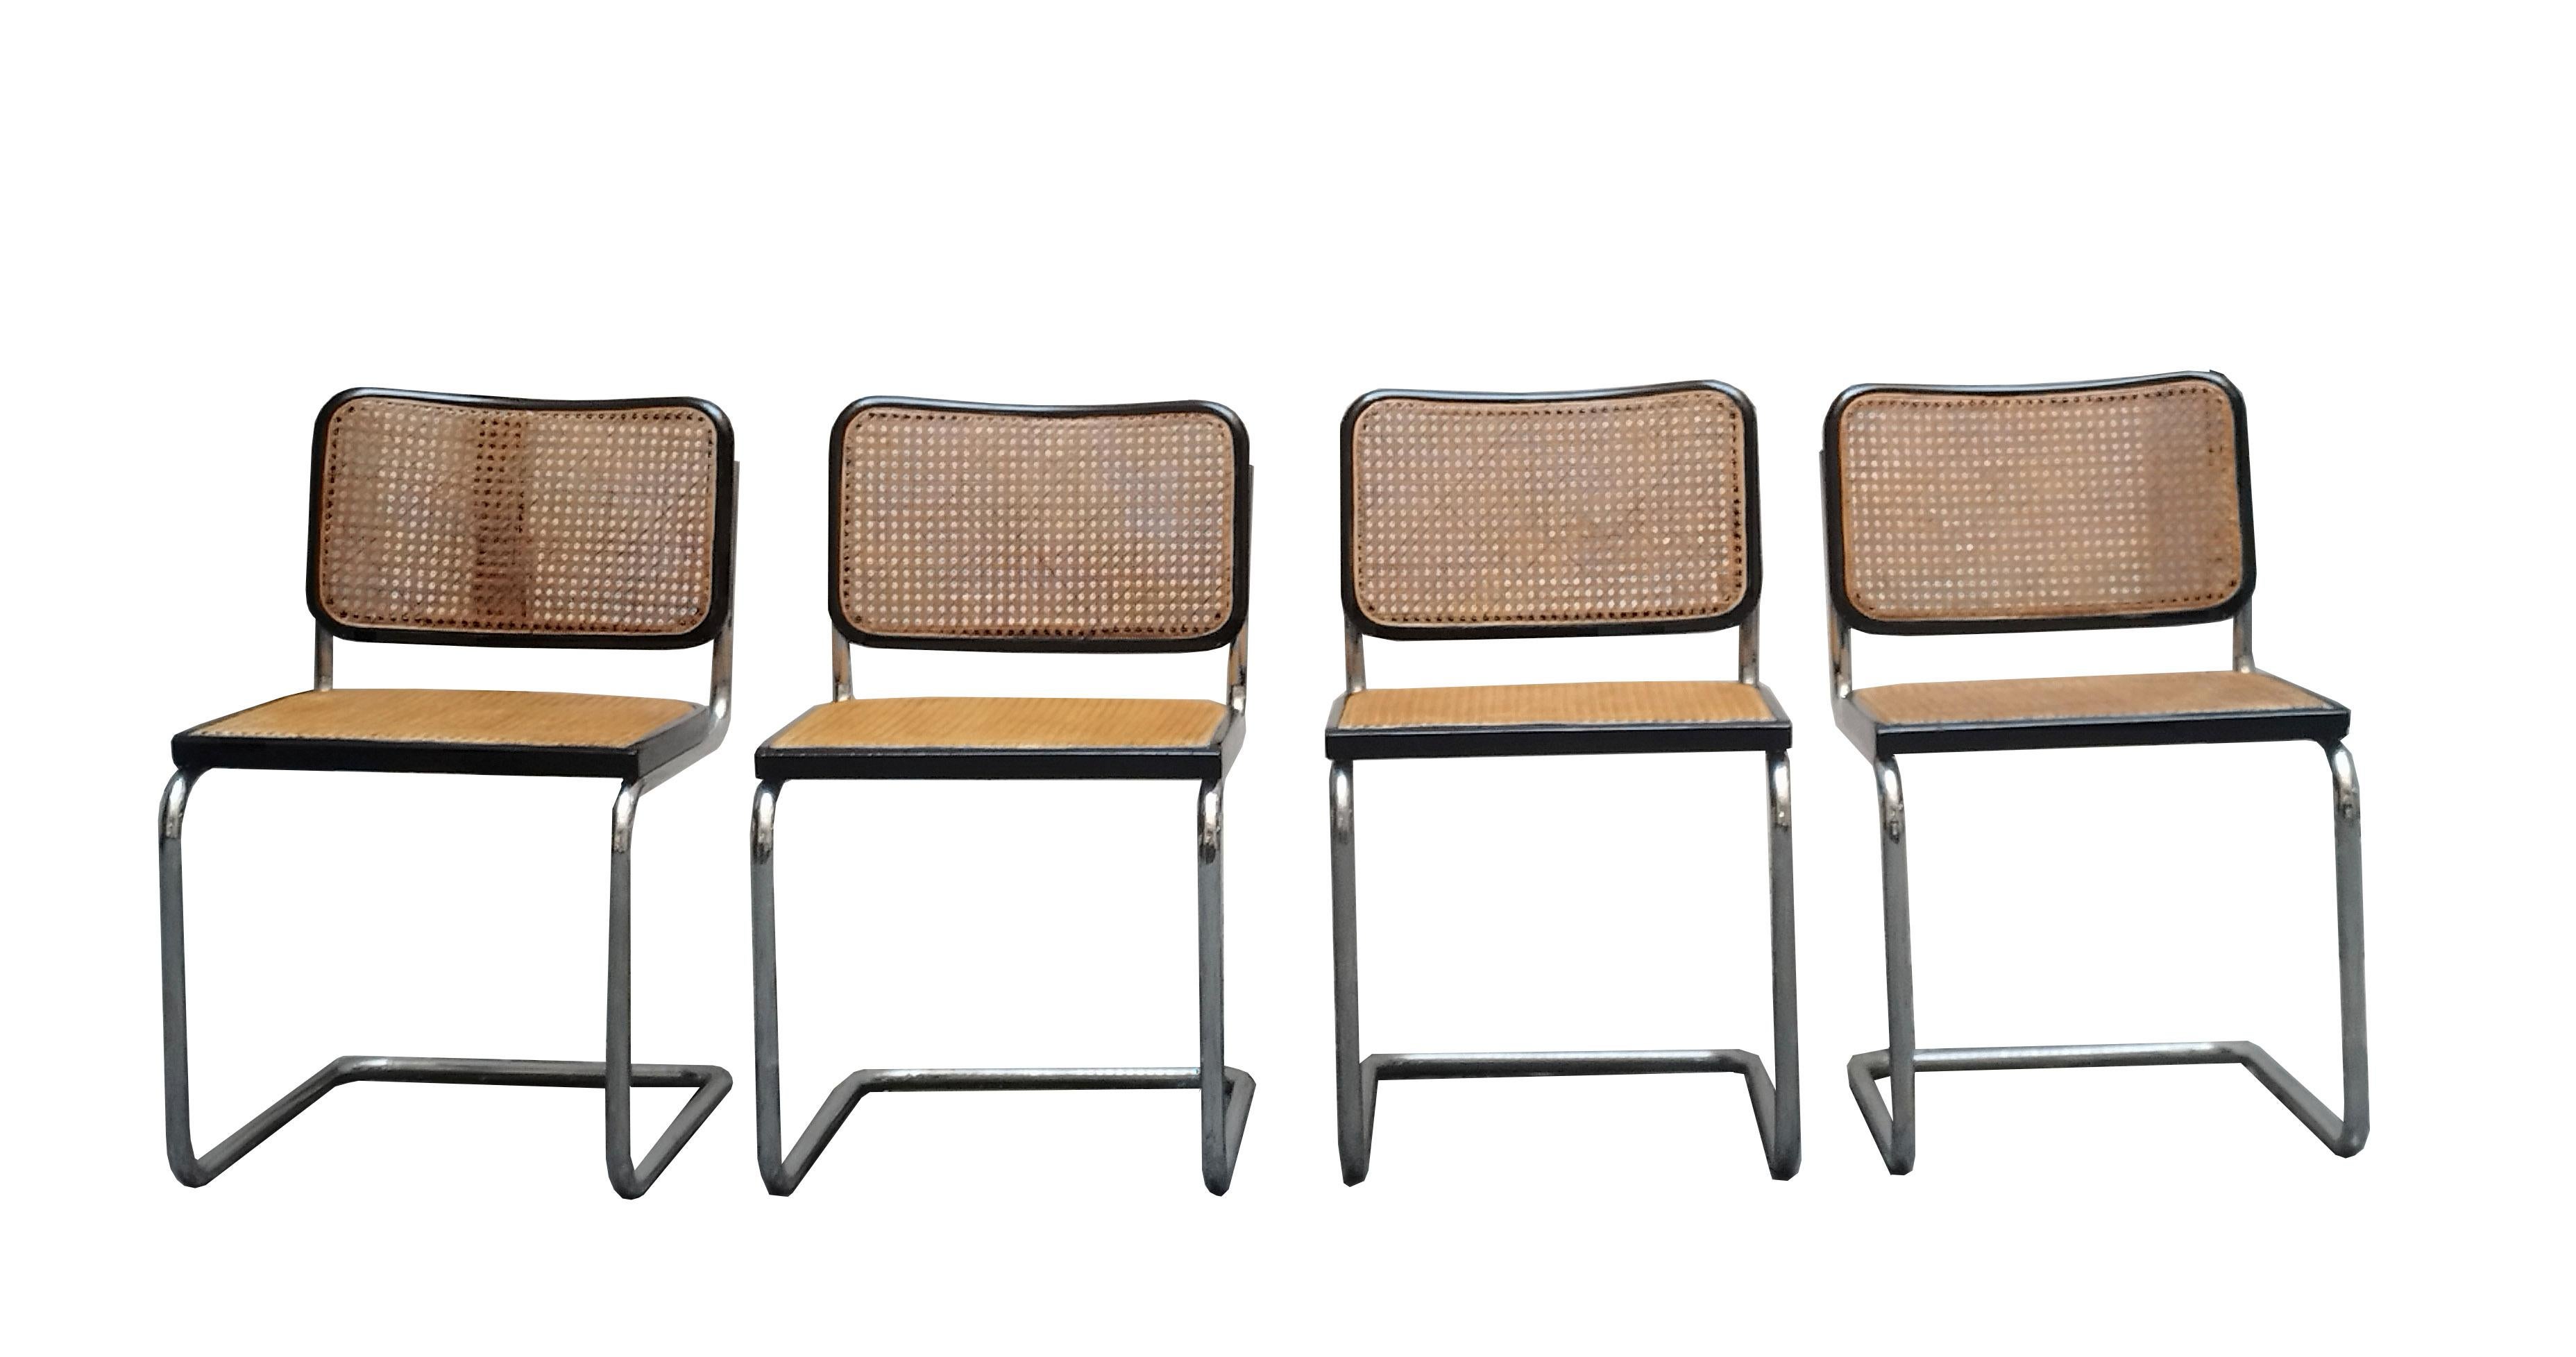 Gruppe von vier Stühlen Mod. Cesca von Marcel Lajos Breuer für Gavina - Italien - mit Original Label.
Rückenlehne aus Nussbaumholz, Gestell aus verchromtem Stahlrohr und Wiener Stroh. Breuers Cesca-Stuhl hat die gesamte Designgeschichte des 20.